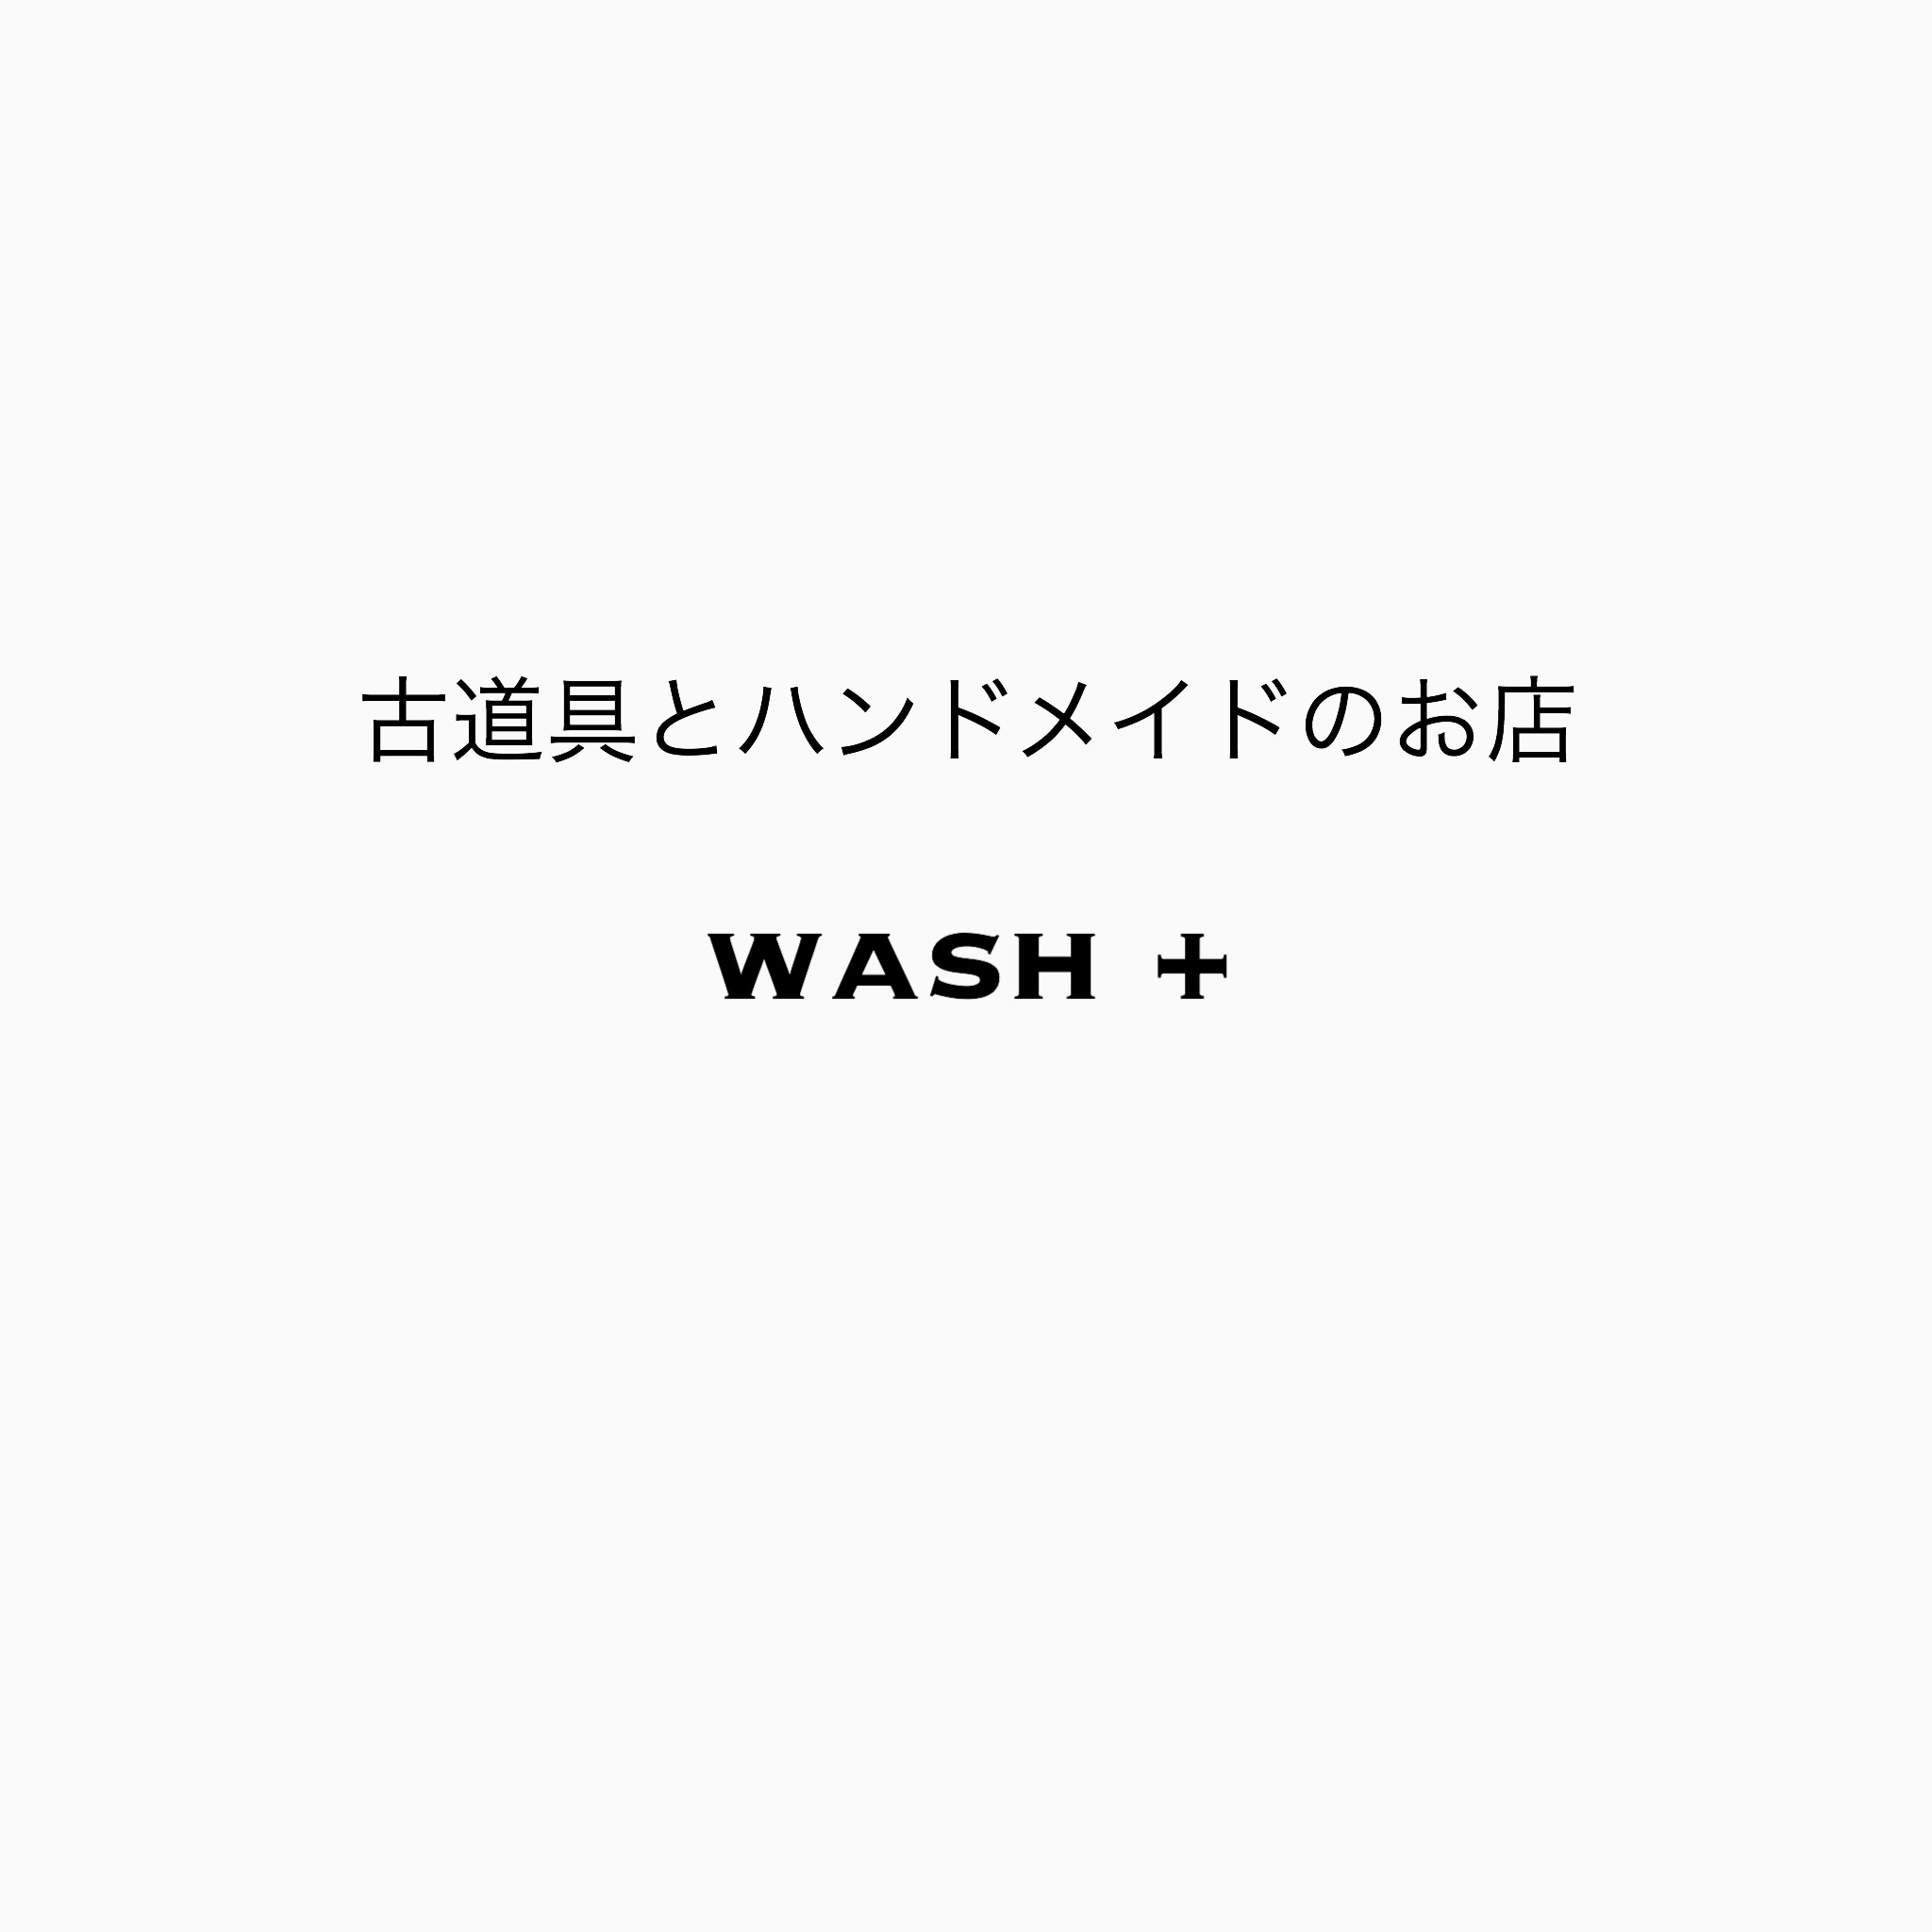 washplus